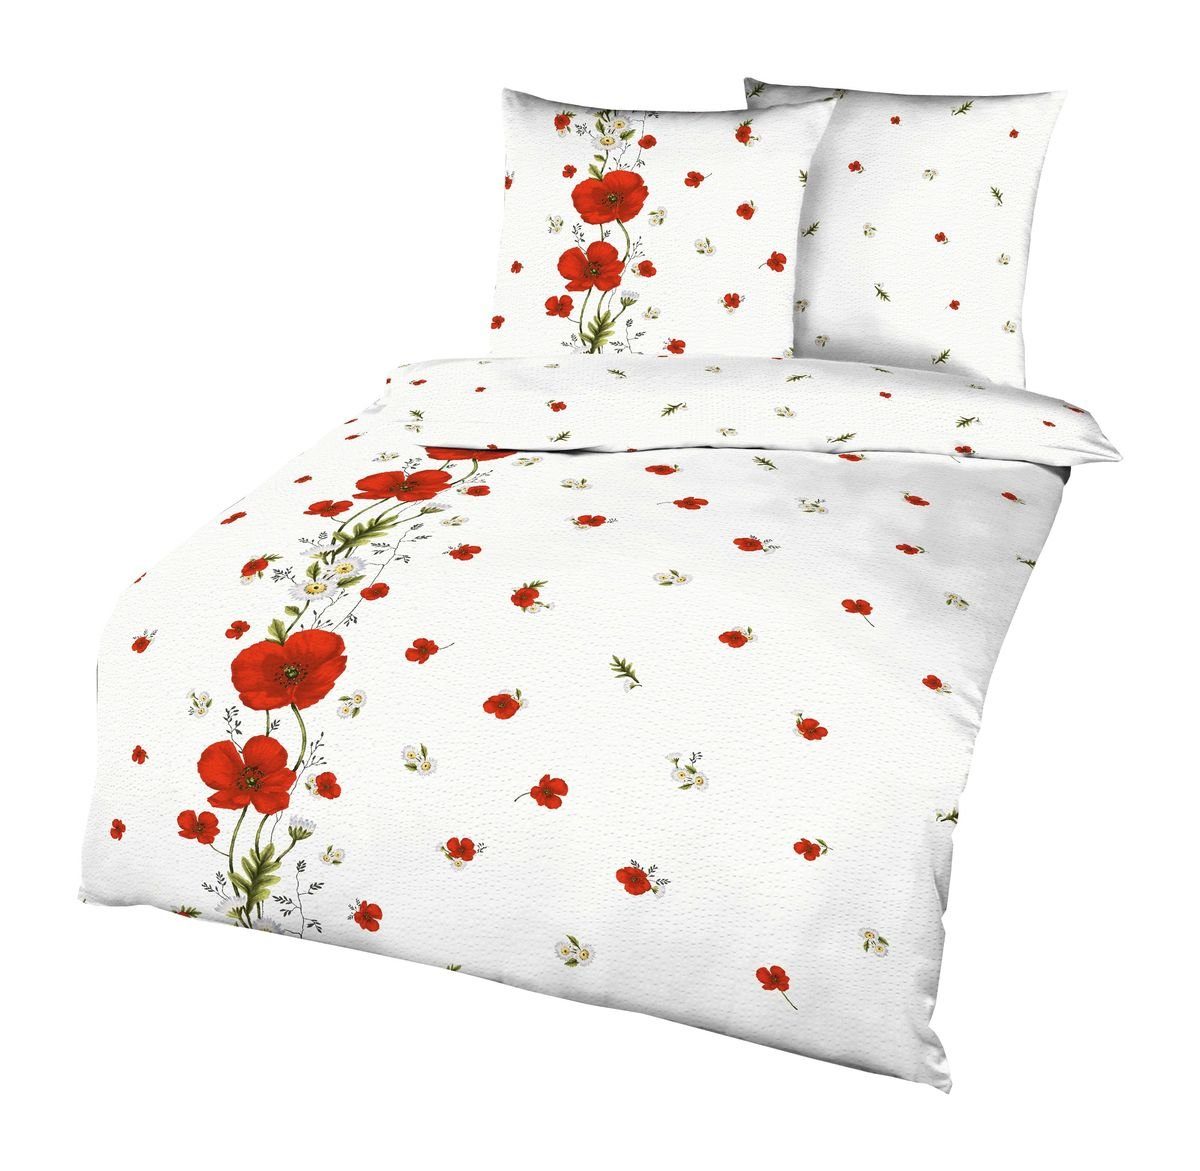 Wendebettwäsche Kaeppel Seersucker Bettwäsche 155x220cm Red Poppy Mohn Rot Weiß, Kaeppel, Seersucker, 2 teilig, weiße Bettwäsche mit großen und kleine roten Mohnblumen